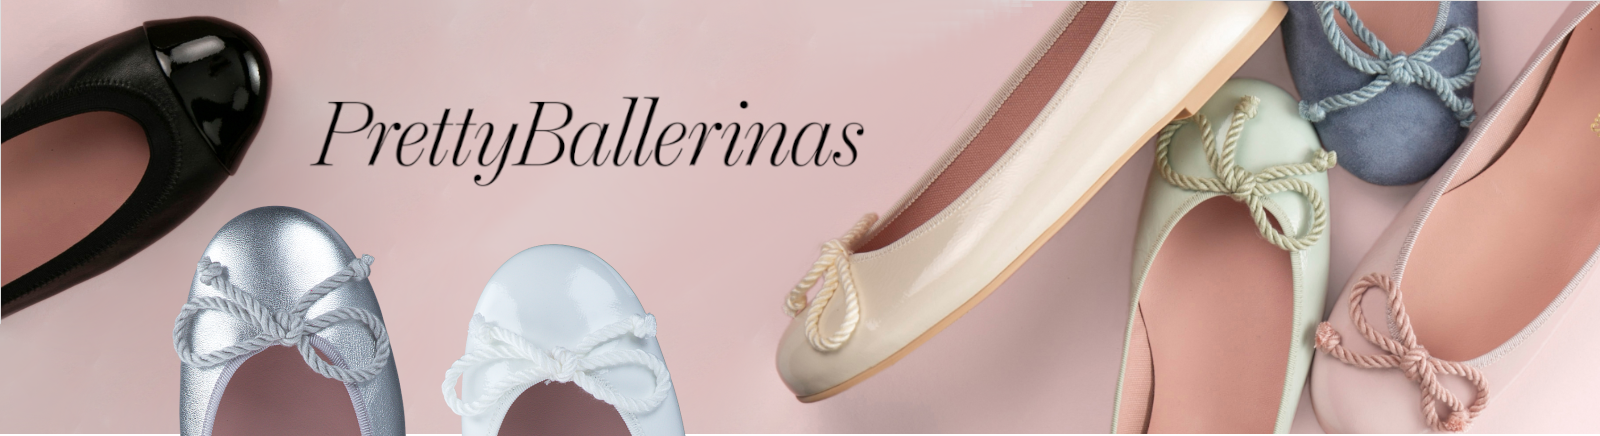 Juppen: Pretty Ballerinas Ballerinas für Damen kaufen online shoppen